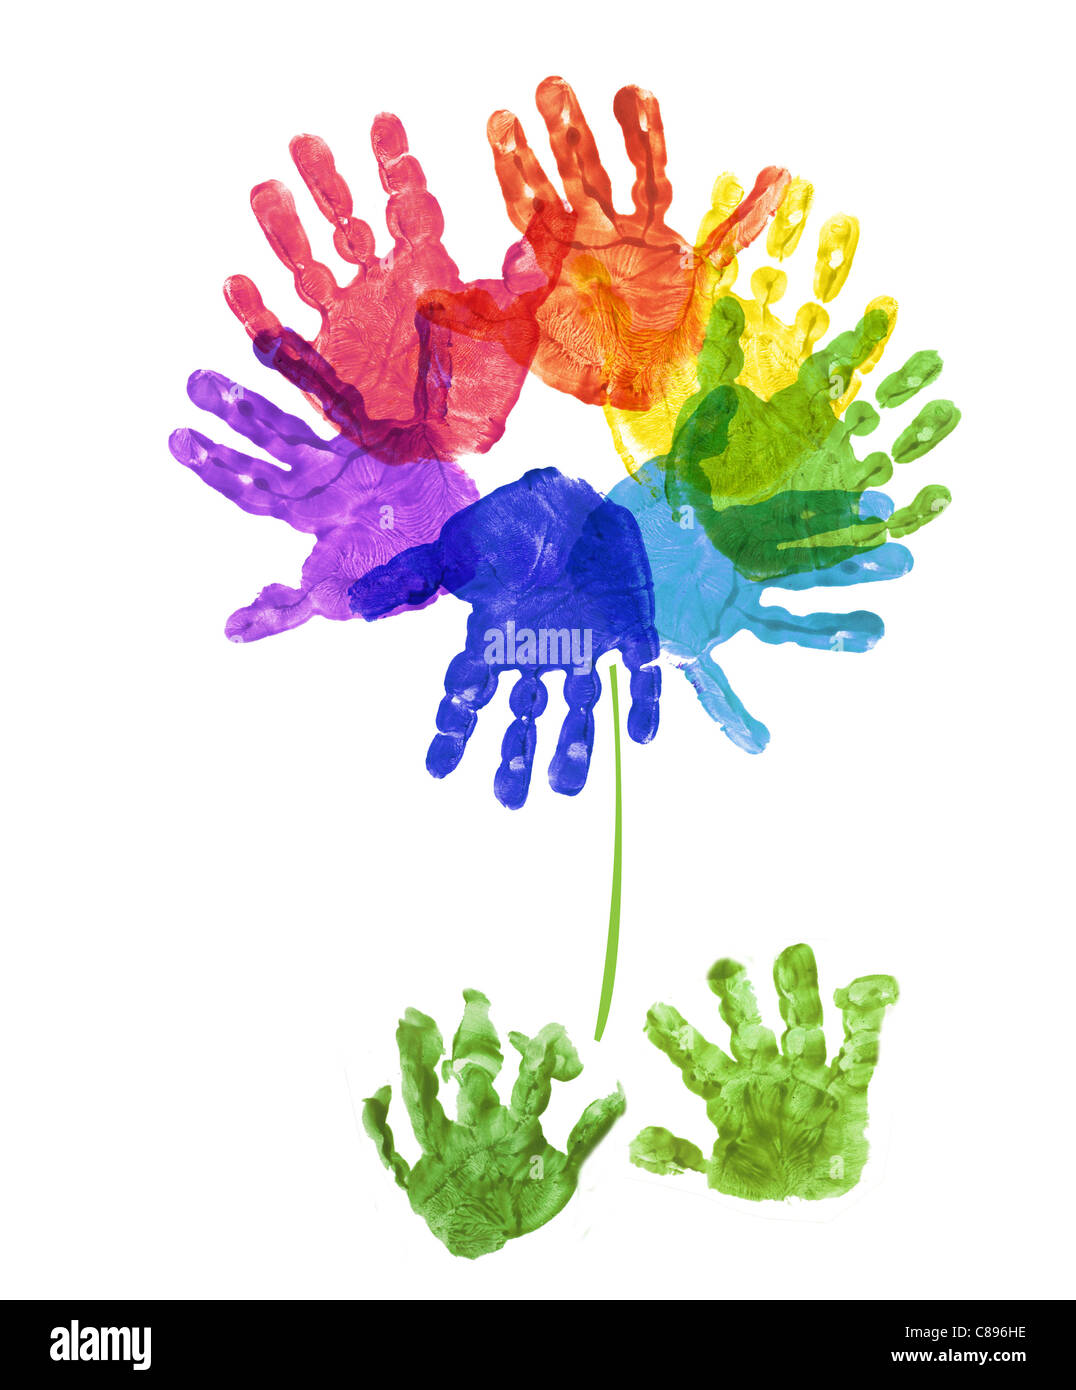 eine Blume aus Kinderhand gefertigt druckt in Regenbogenfarben auf weißem  Hintergrund Stockfotografie - Alamy